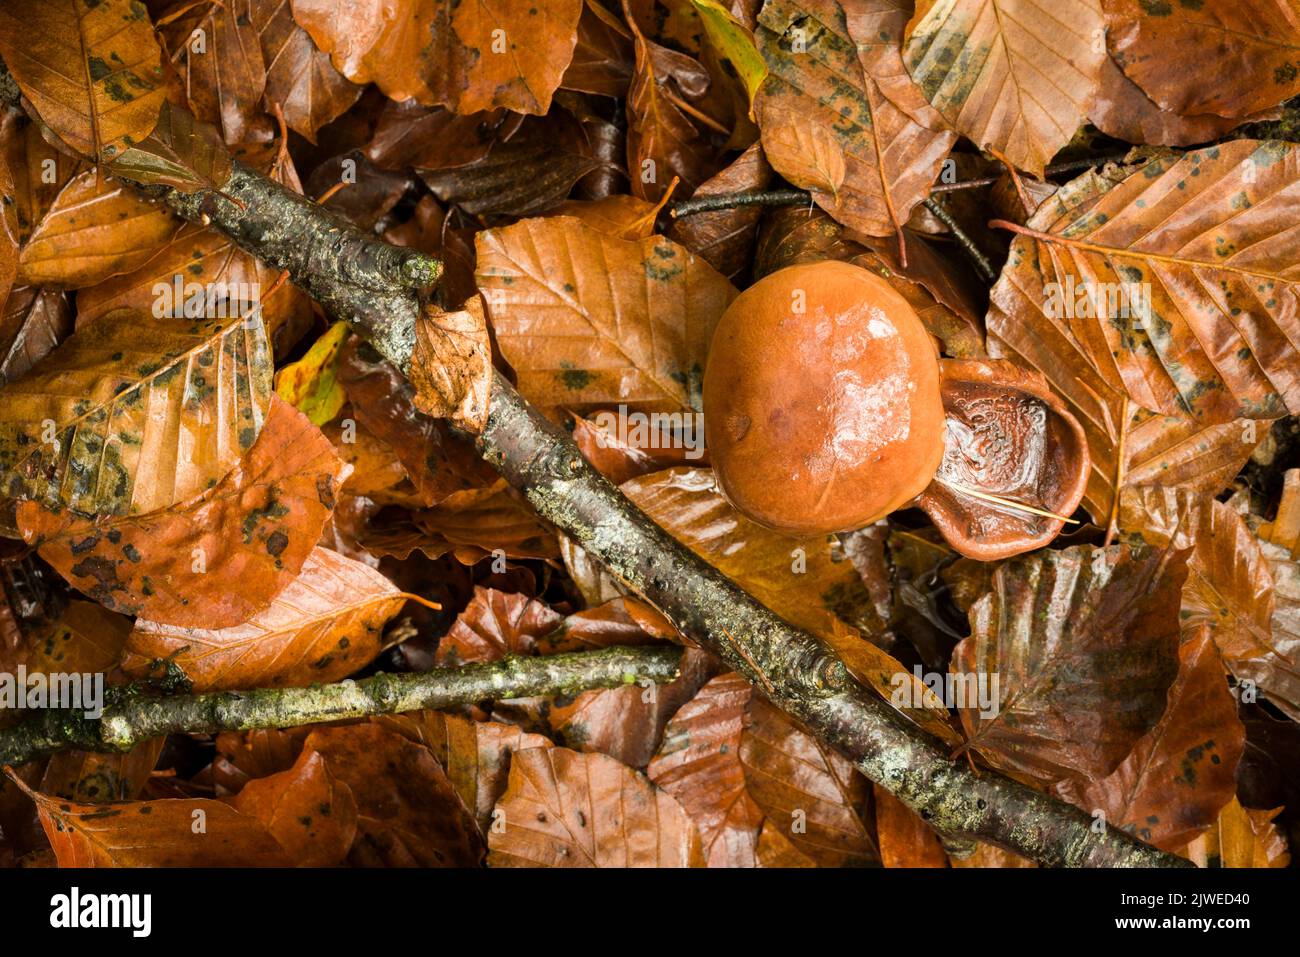 Cavaliere bruciato (Tricholoma ustale) funghi che crescono nella lettiera sotto un albero di faggio comune in un bosco a foglia larga nelle colline di Mendip, Somerset, Inghilterra. Foto Stock